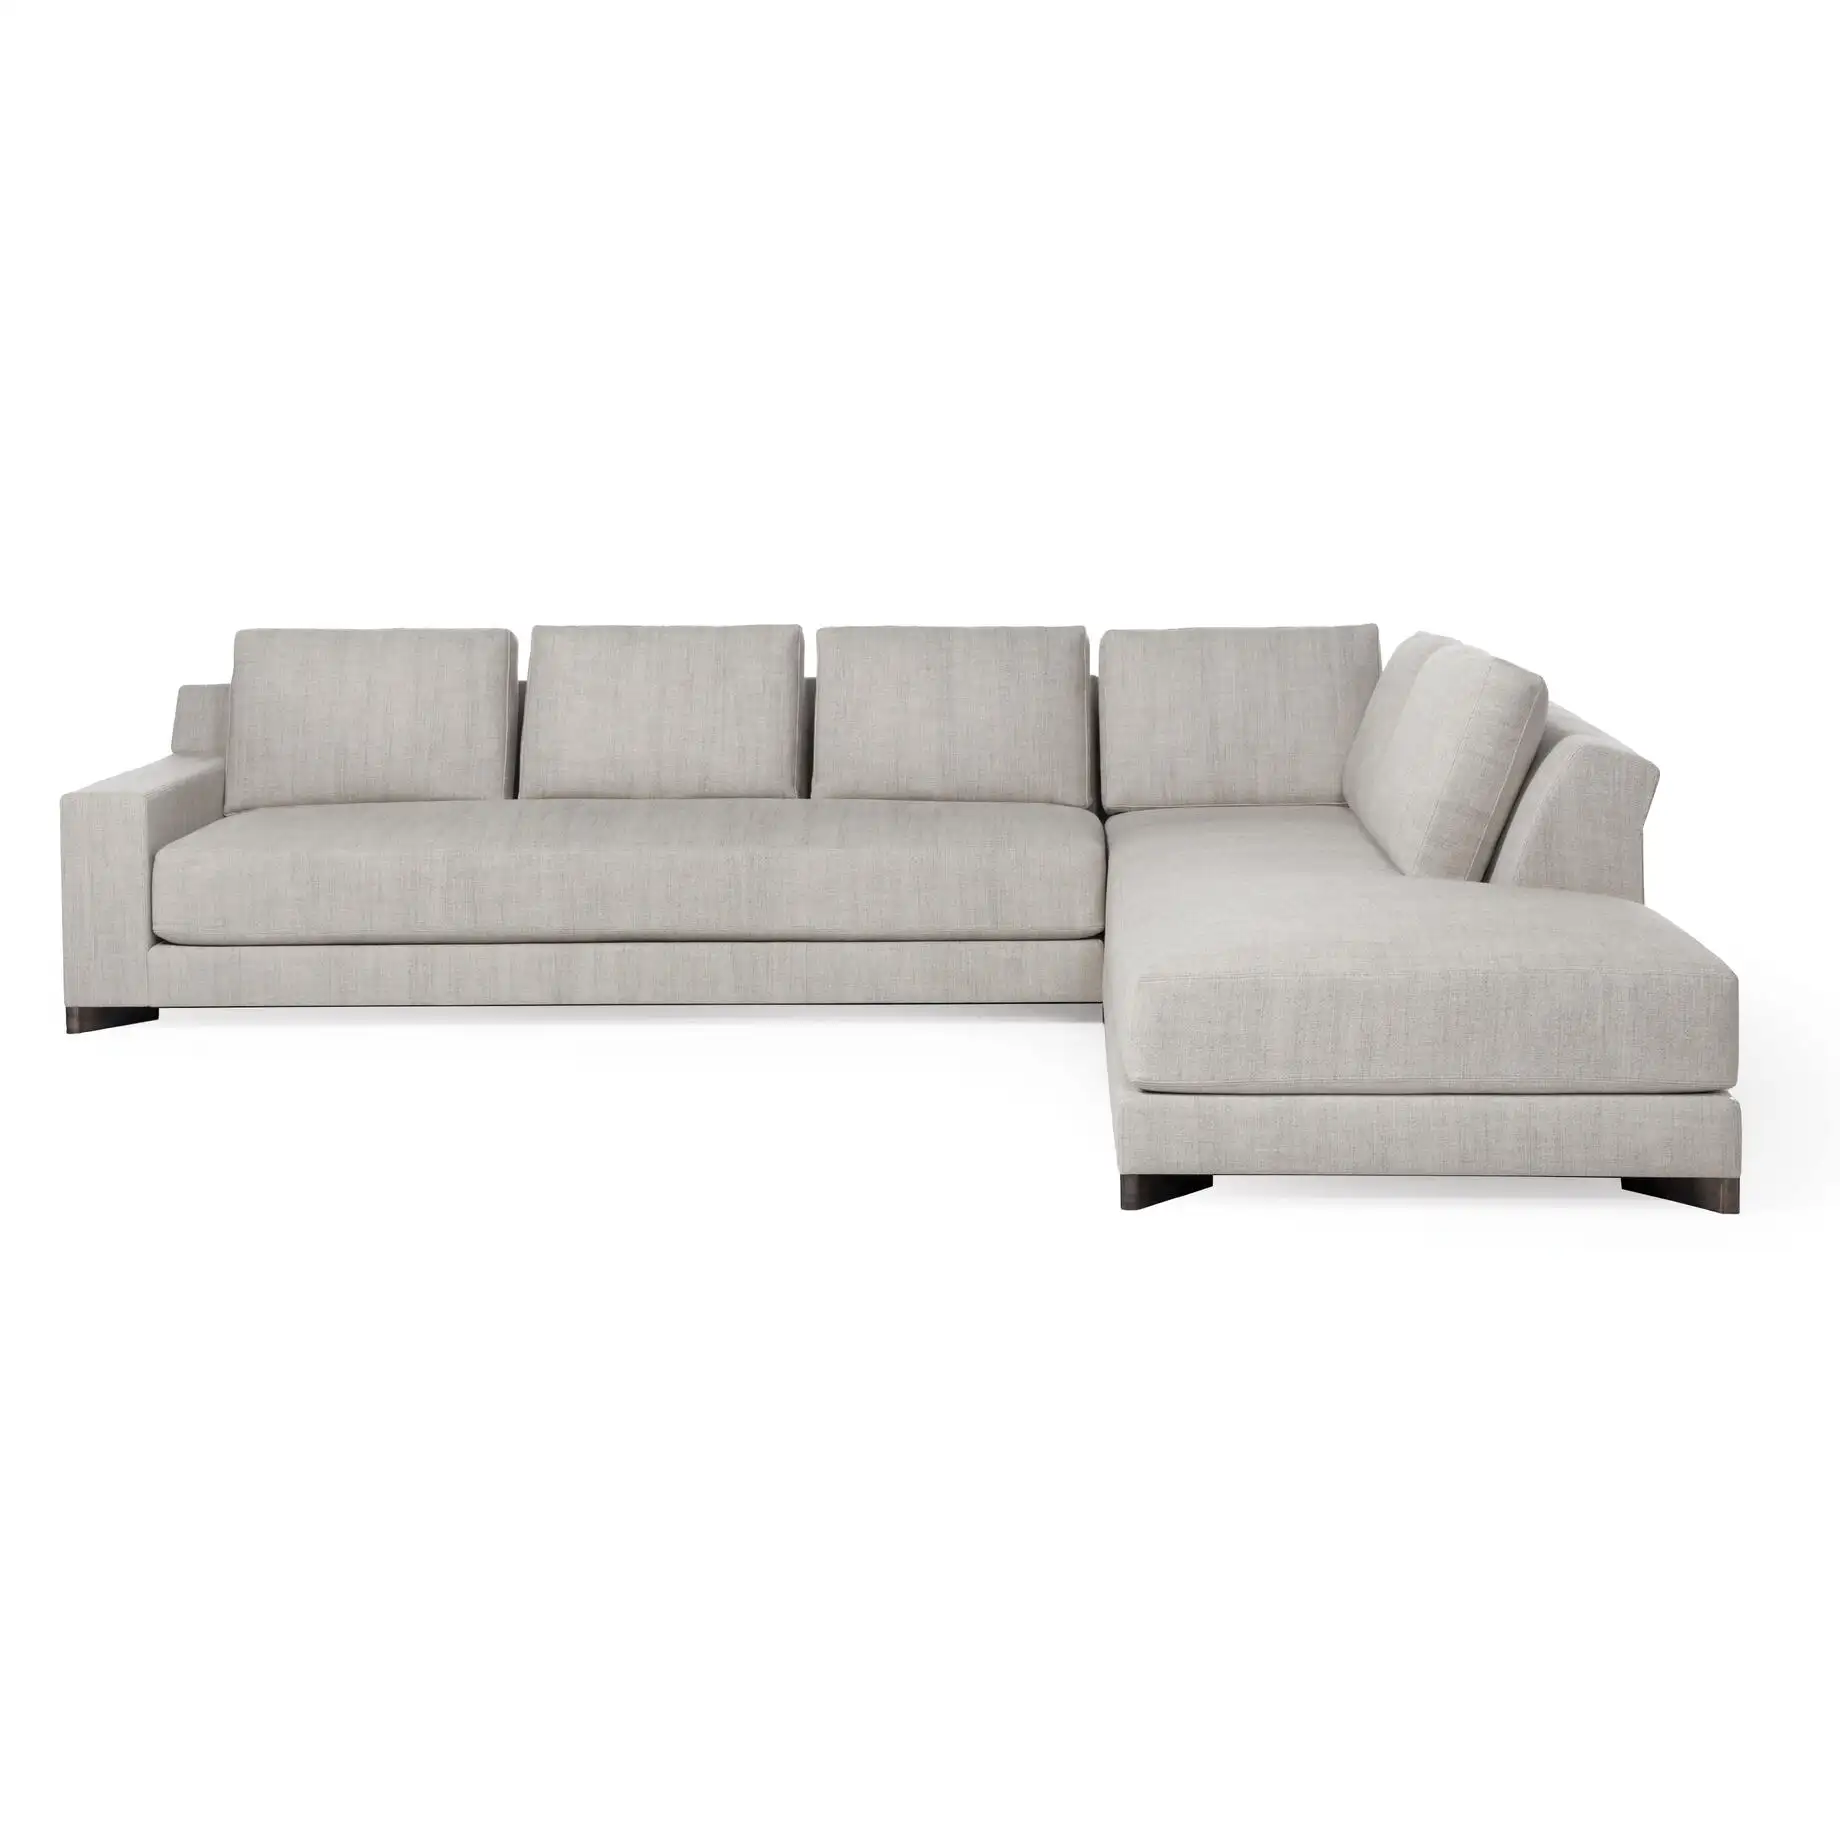 Sofá de lujo moderno de alta calidad, sala de estar, esquina del hogar, sofá de plumón para varias personas en forma de U, personalizado